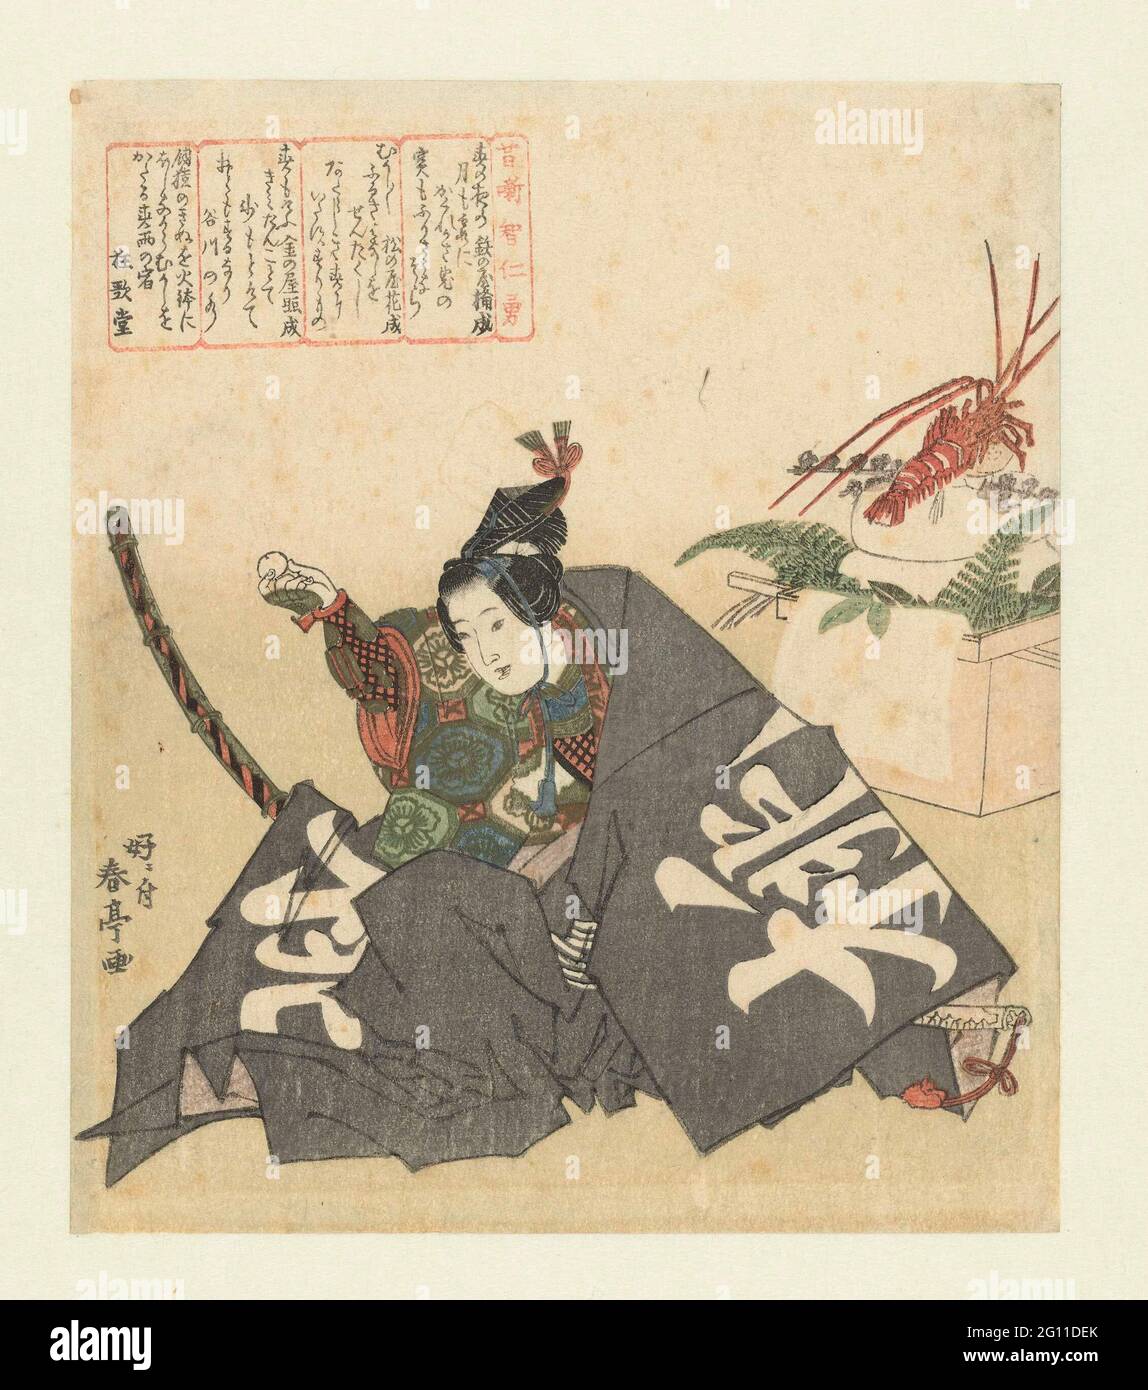 Momotarô; sagesse, vertu et bravoure d'histoires anciennes; Mukashibanashi Chijinyû. Un jeune Momotarô, le personnage principal du conte de fées éponyme, vêtu d'une robe de court, est assis à côté des décorations du nouvel an d'un écrevisse, des gâteaux ronds de riz (kagamimochi), des feuilles de fougères (Urajiro) et des feuilles d'oranger (Daidai). Avec quatre poèmes. Momotarô est originaire d'une pêche trouvée dans une rivière. Il voyage avec un singe, un faisan et un chien, bat le roi géant et réfléchit avec des trésors au couple qui l'a jamais trouvé. Banque D'Images